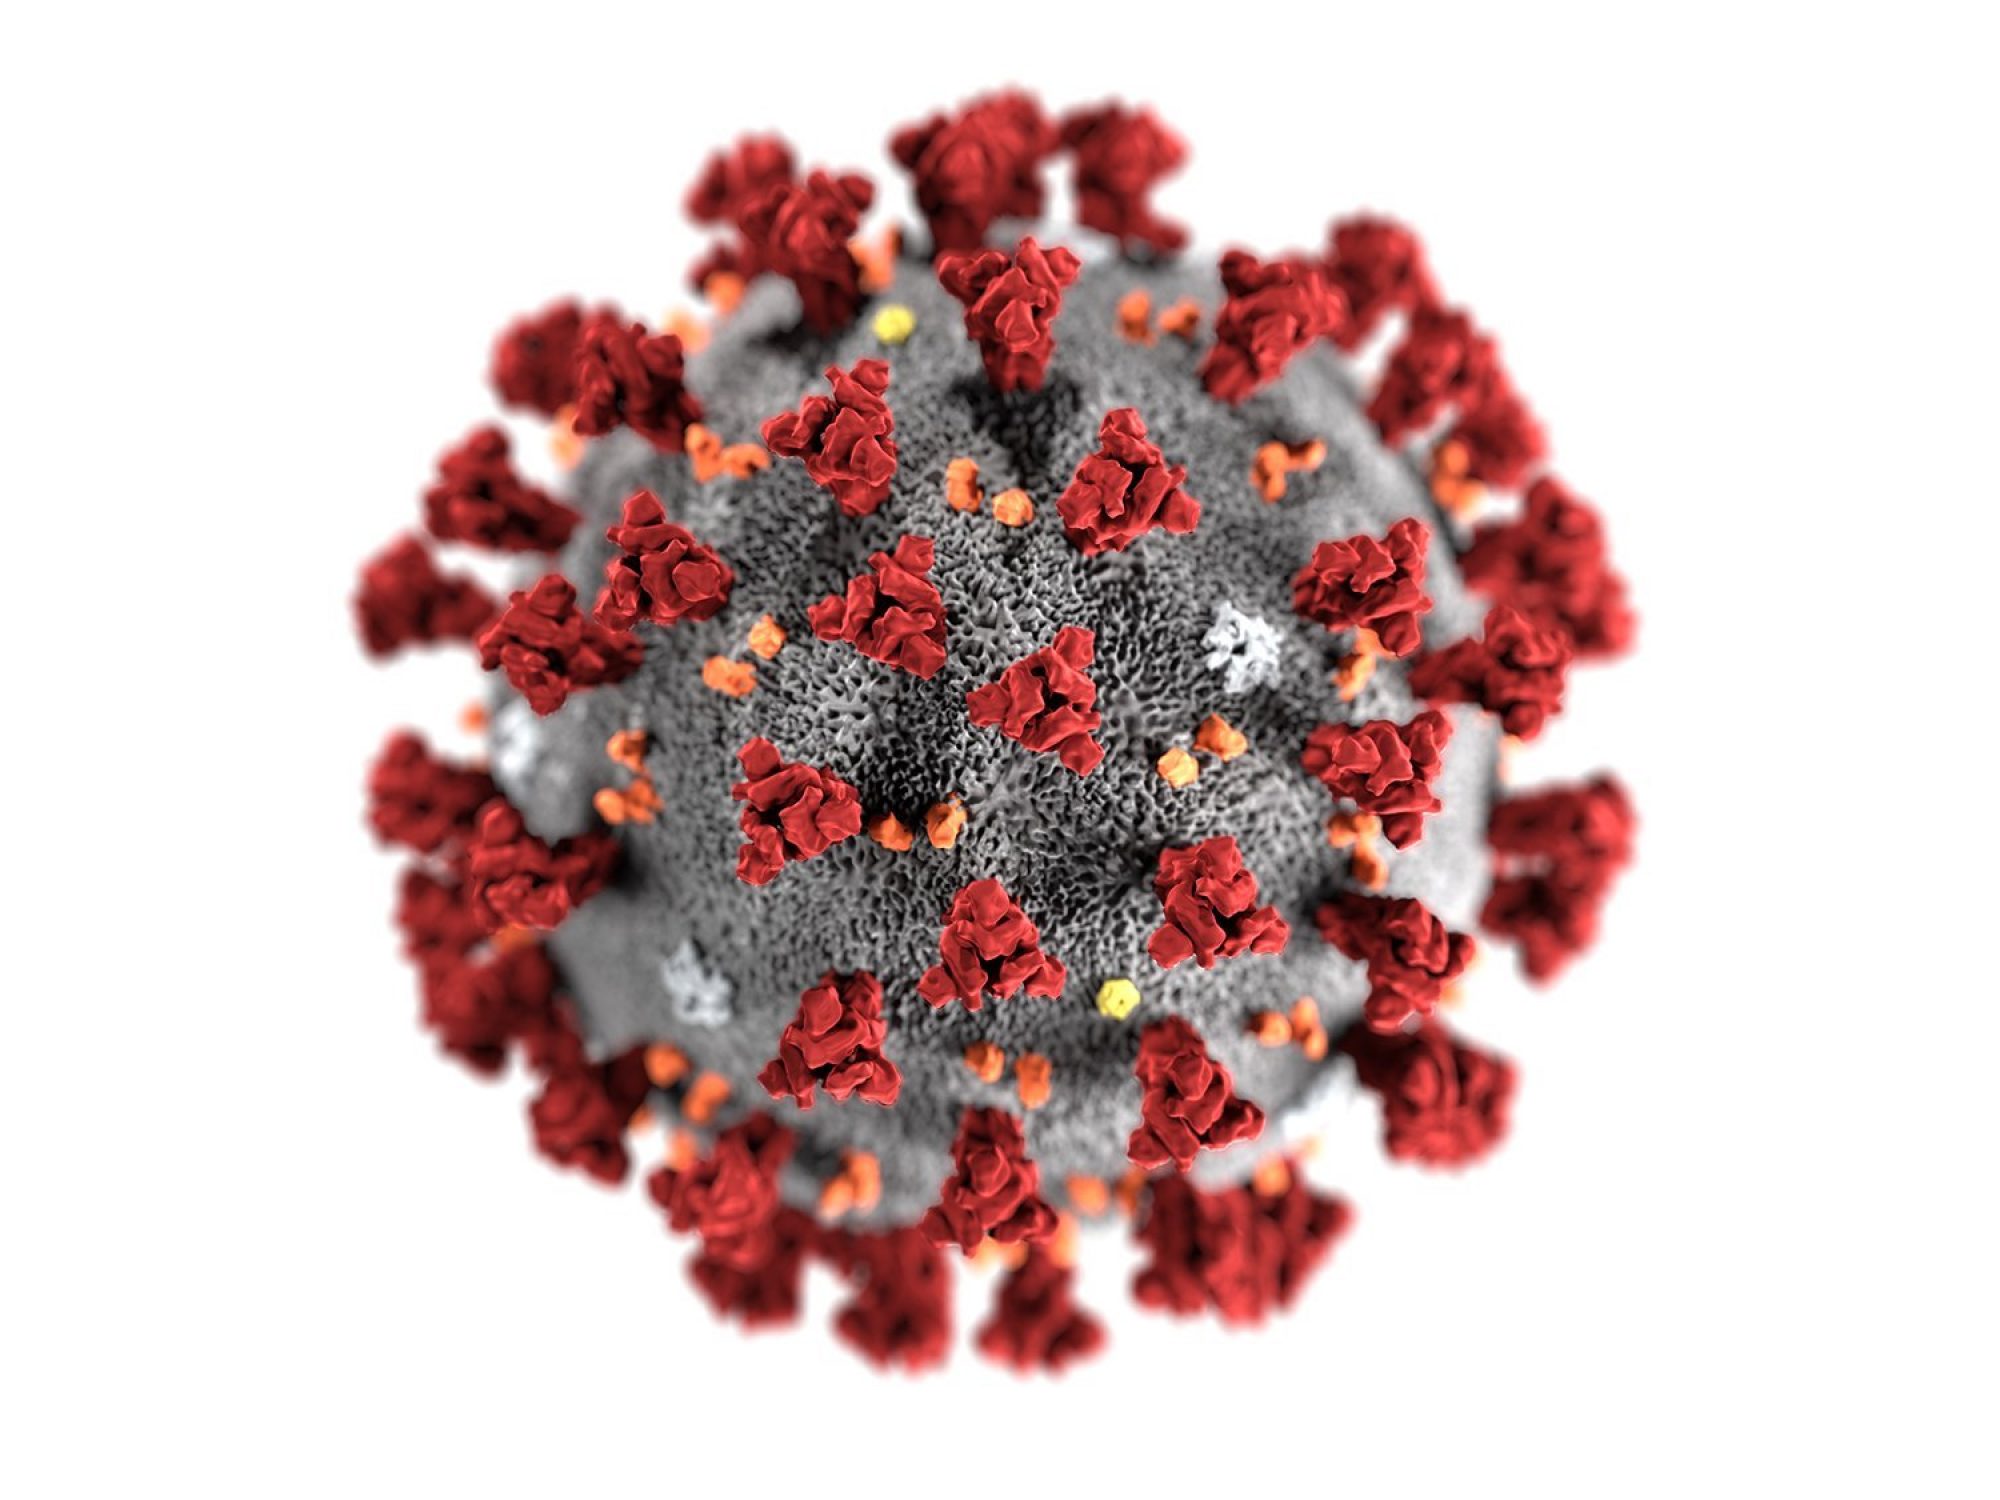 Where It Started COVID-19 (Coronavirus)